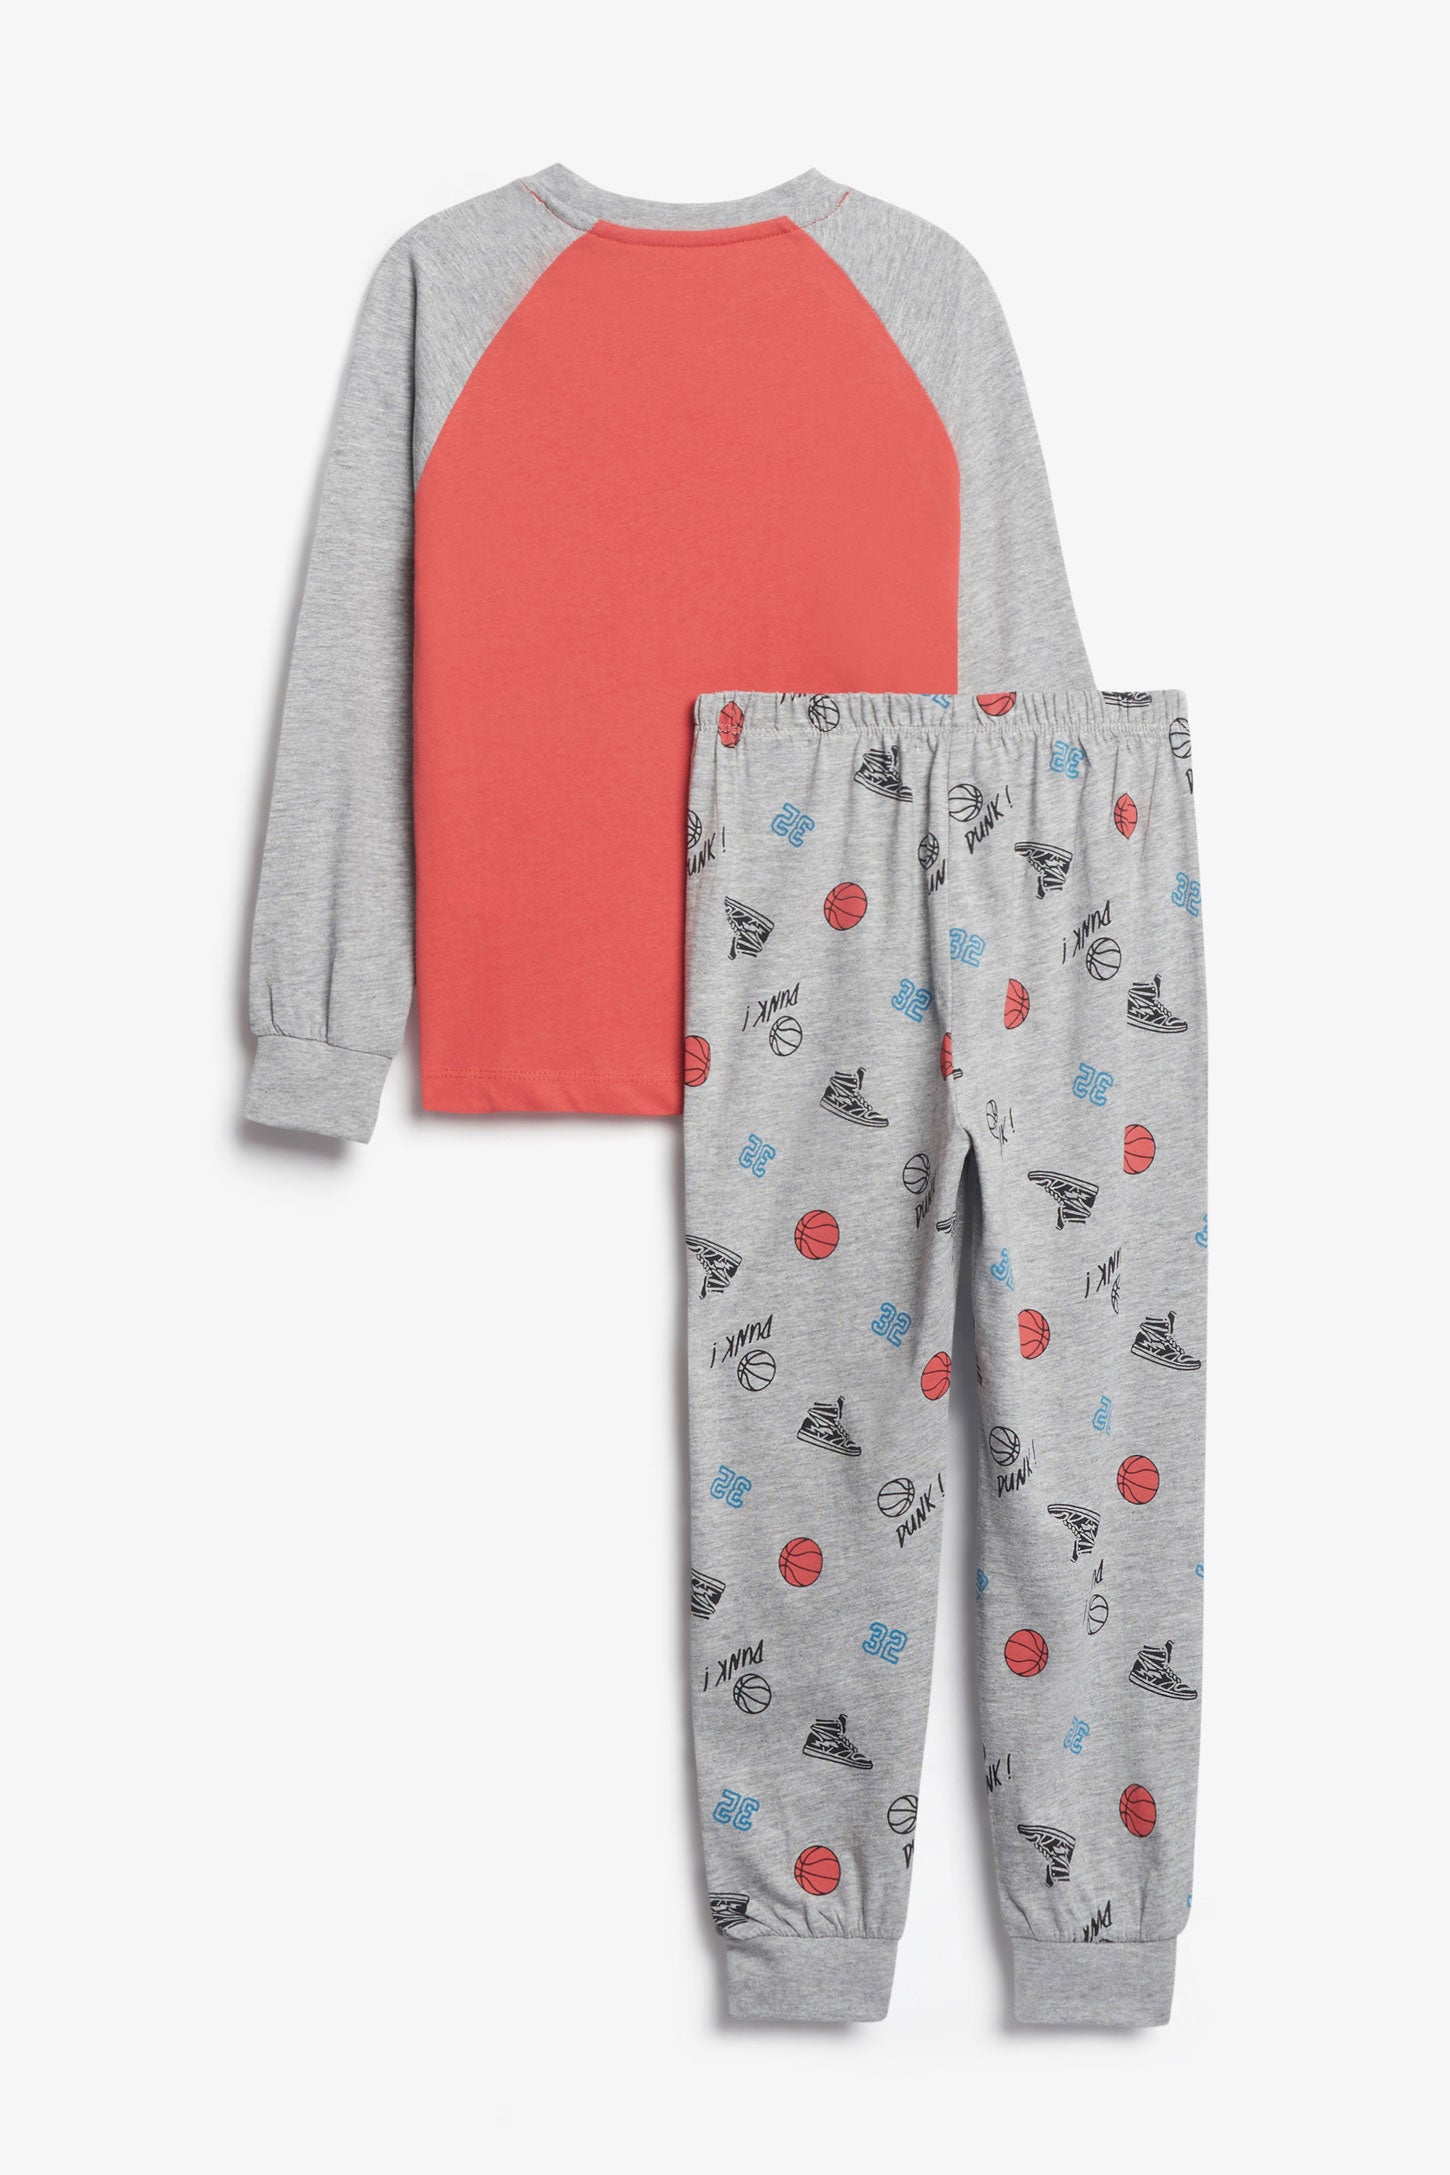 Duos futés, Pyjama 2-pièces en coton, 2/35$ - Enfant garçon && ROUGE